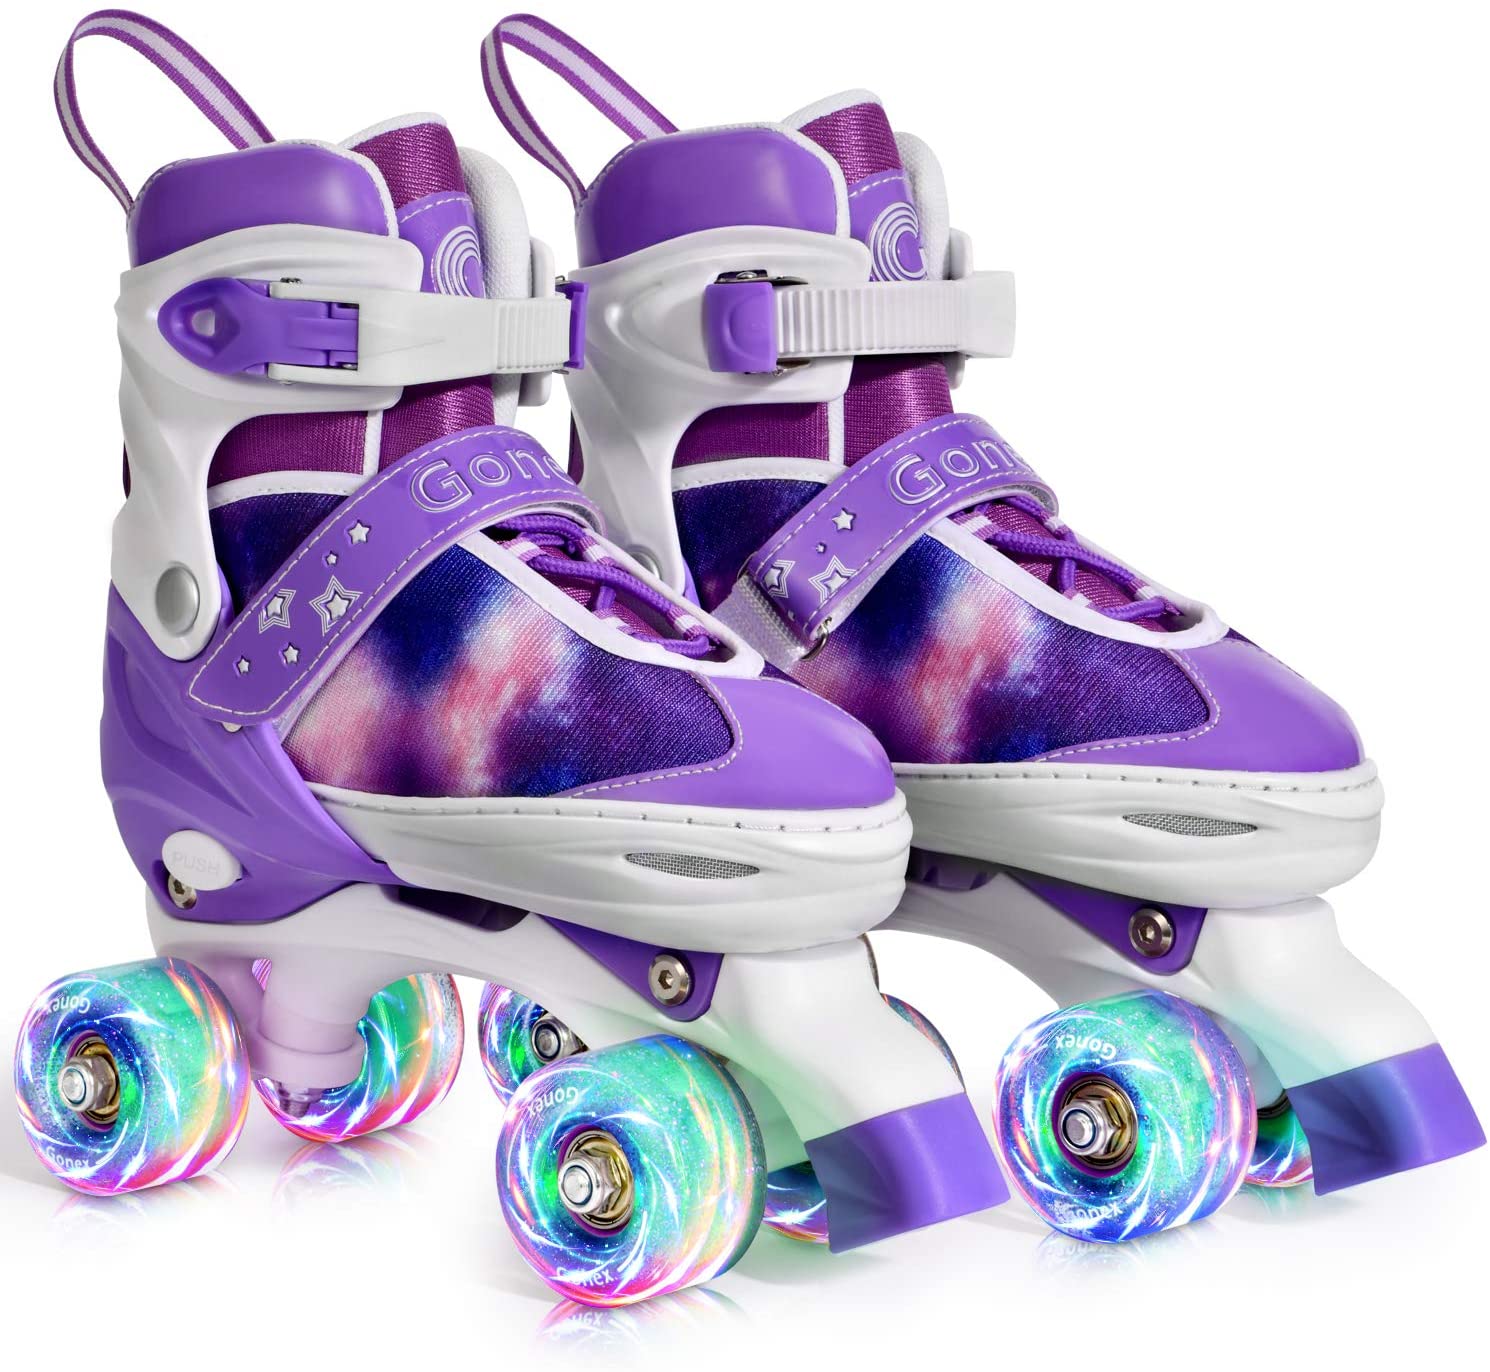 Gonex Roller Skates for Girls